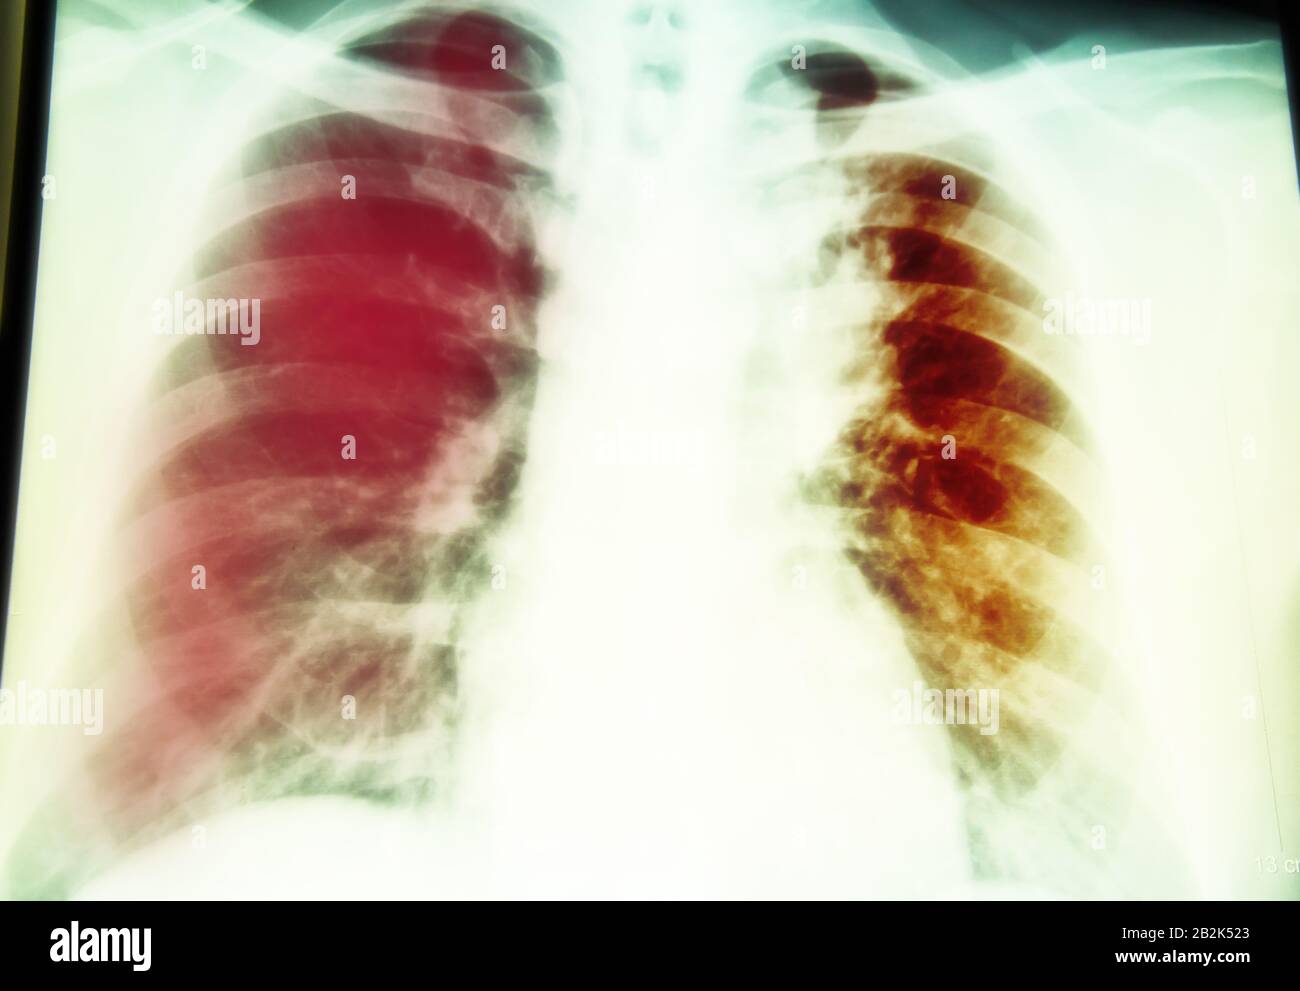 Petto di un esame a raggi x per la diagnosi La tubercolosi polmonare infezione con il polmone destro Foto Stock